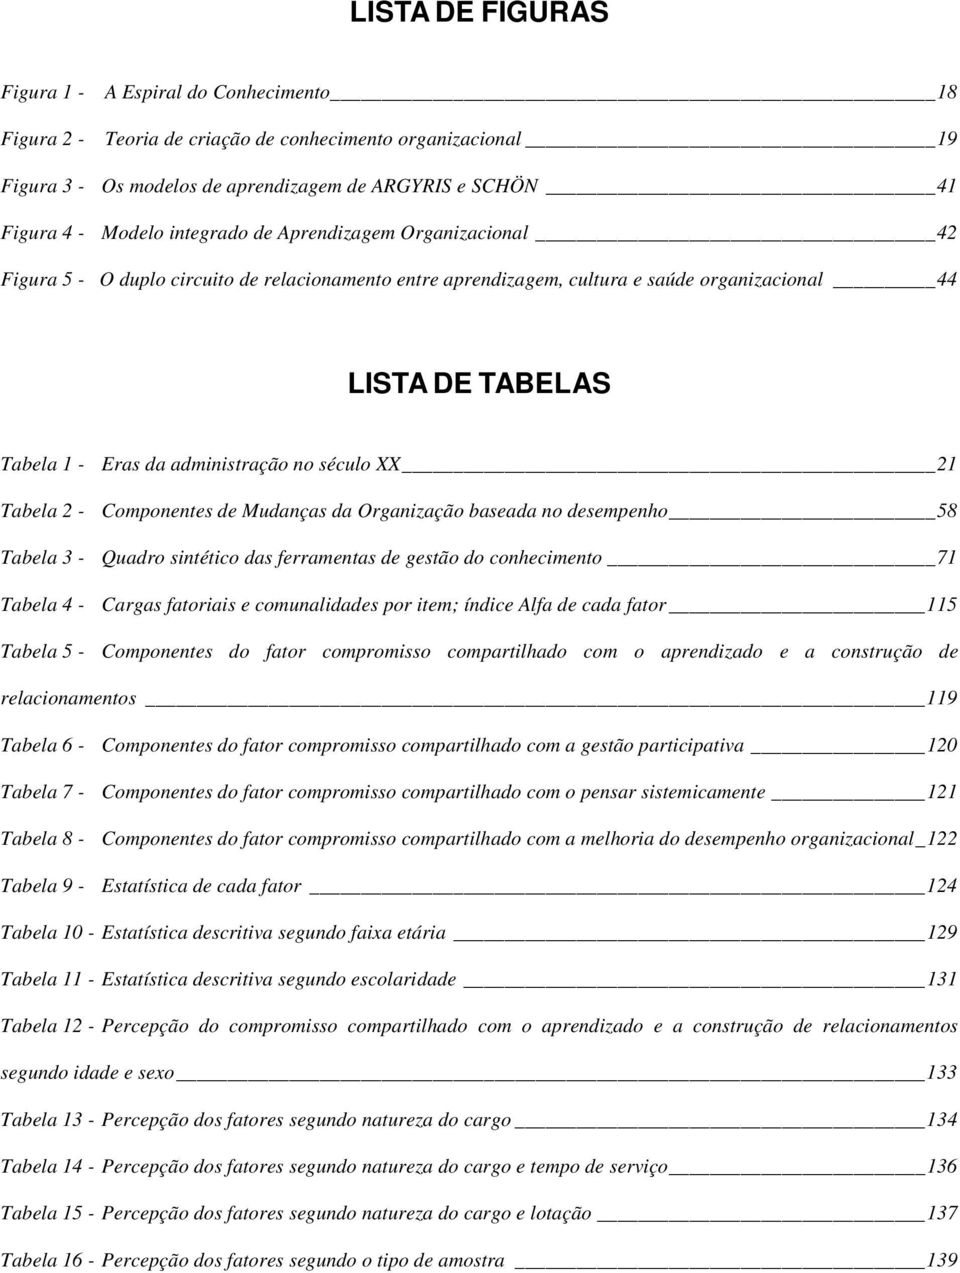 século XX 21 Tabela 2 - Componentes de Mudanças da Organização baseada no desempenho 58 Tabela 3 - Quadro sintético das ferramentas de gestão do conhecimento 71 Tabela 4 - Cargas fatoriais e